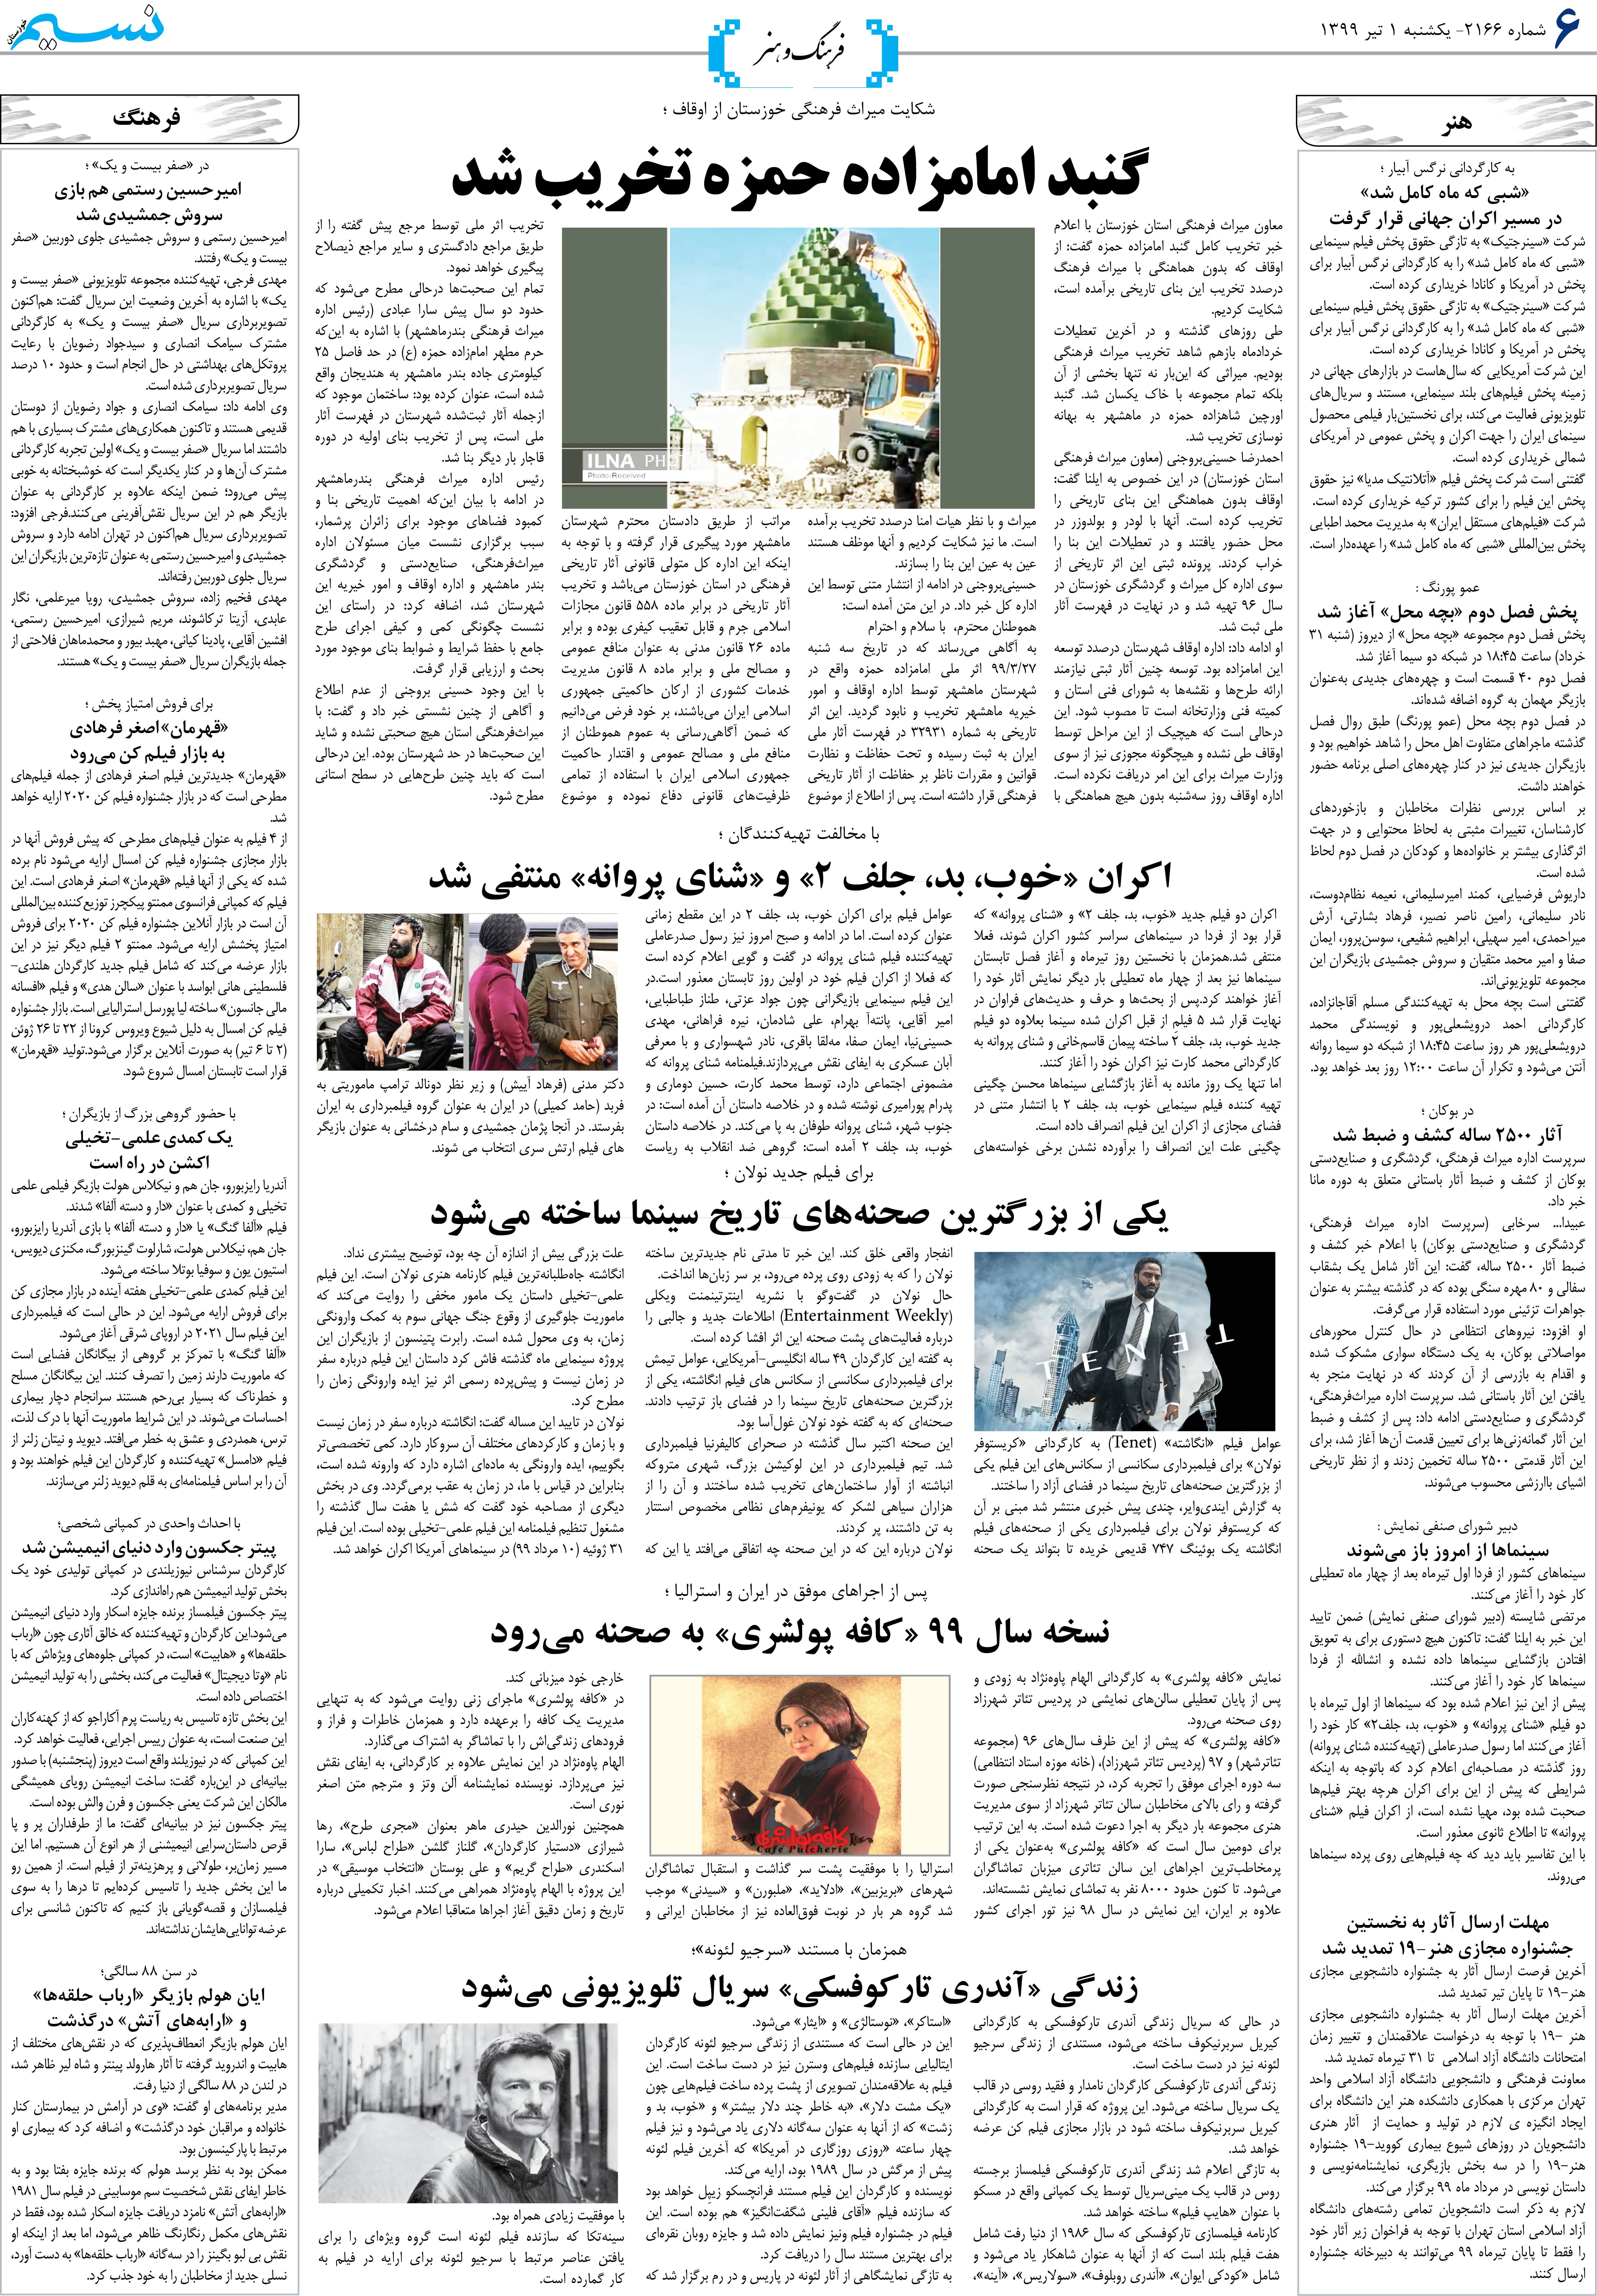 صفحه فرهنگ و هنر روزنامه نسیم شماره 2166